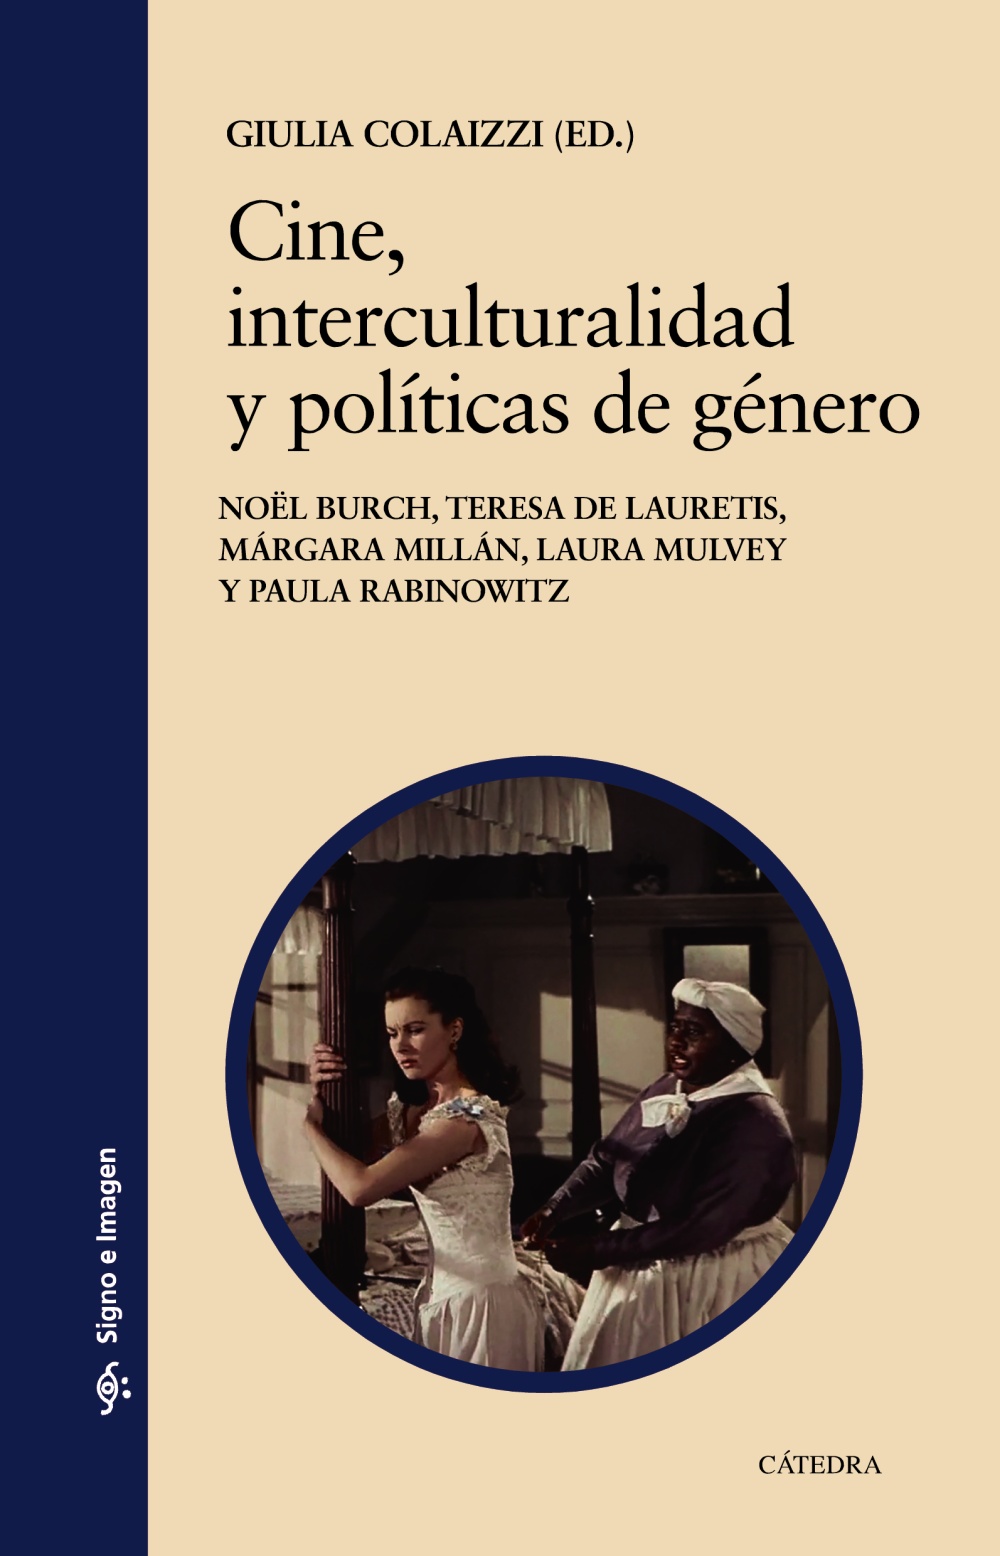 Imagen de portada del libro Cine, interculturalidad y políticas de género